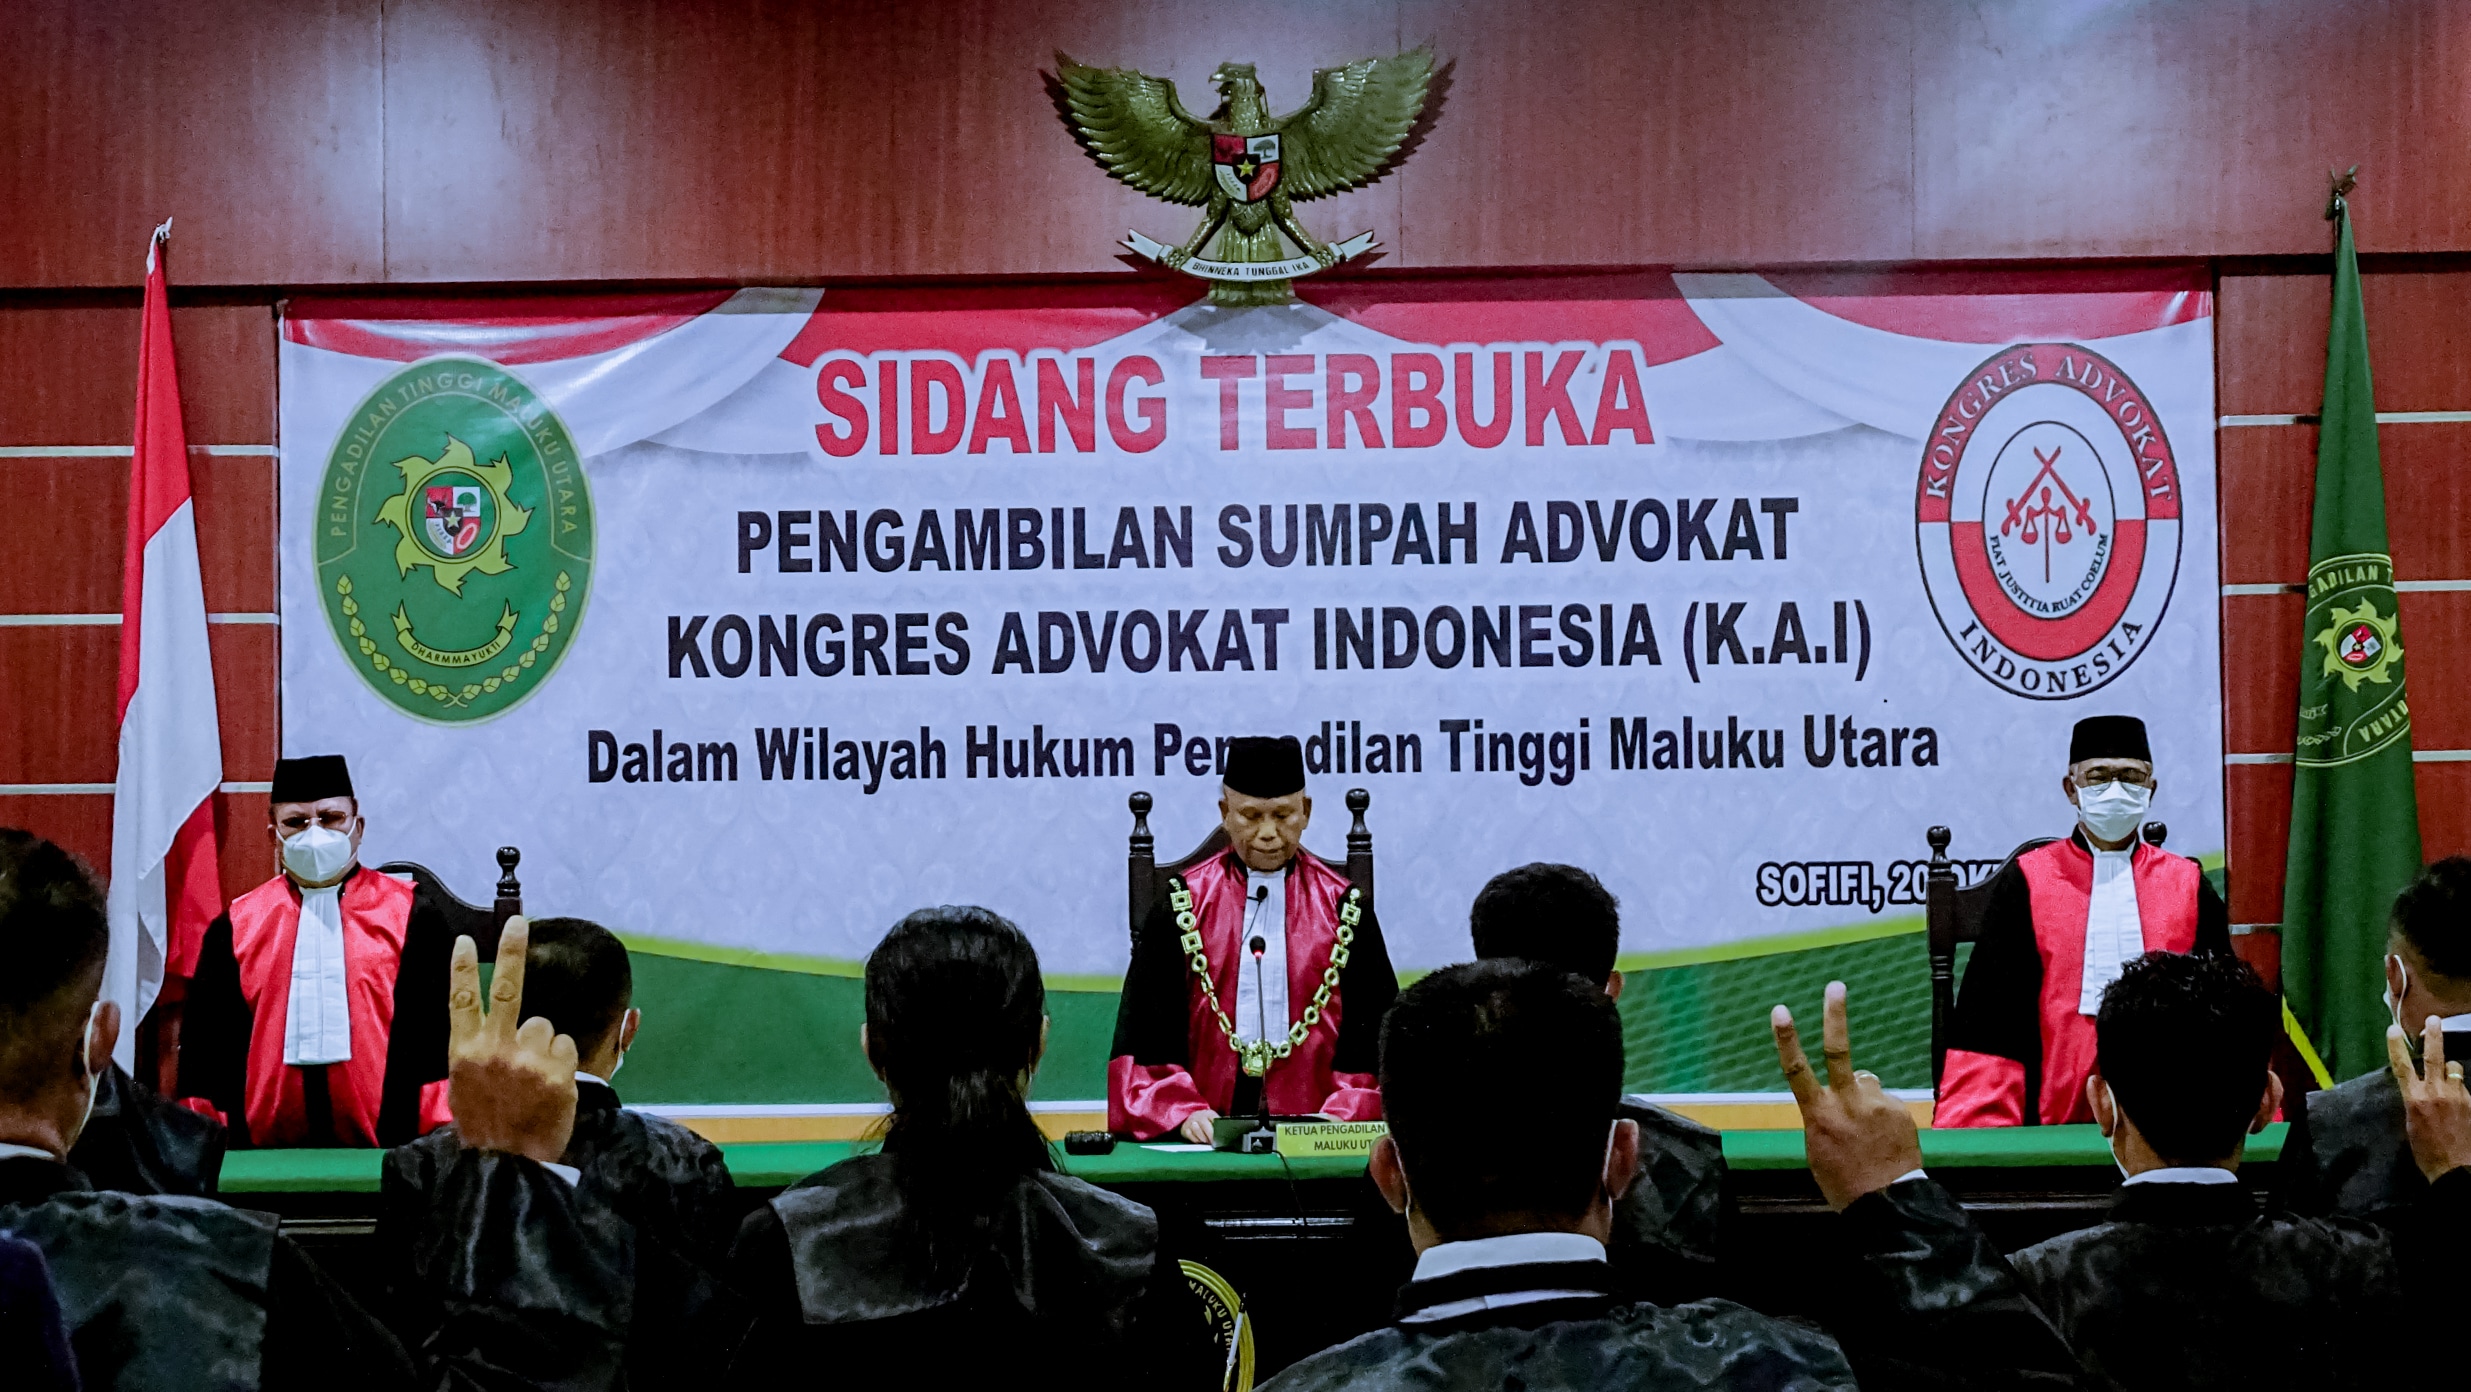 Pengambilan Sumpah Advokat K.A.I. (Kongres Advokat Indonesia)